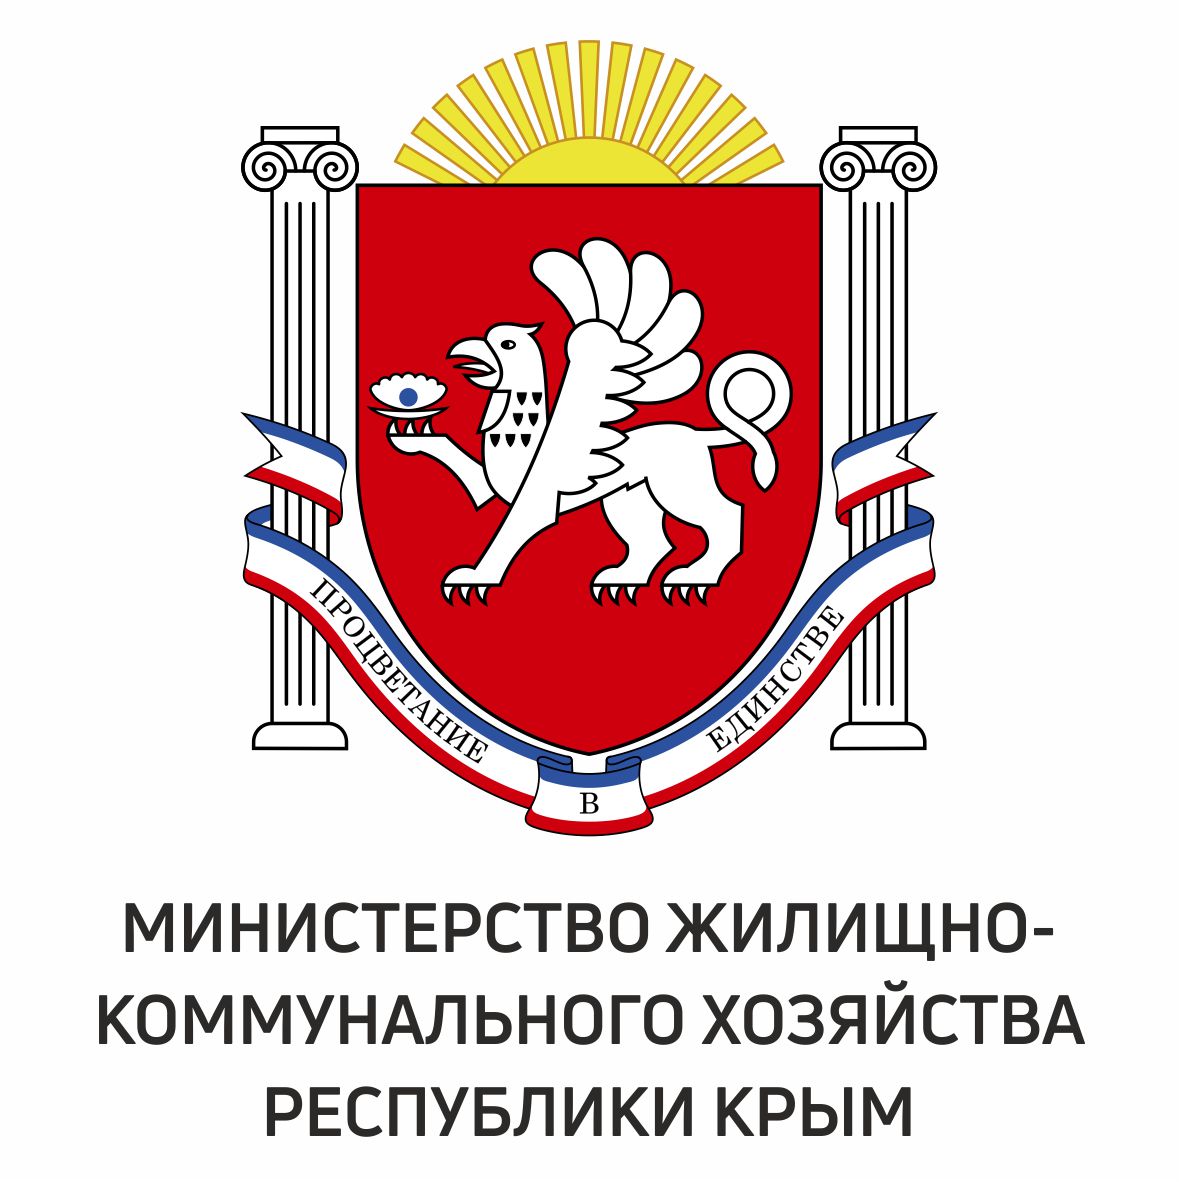 Министерство жилищно-коммунального хозяйства Республики Крым